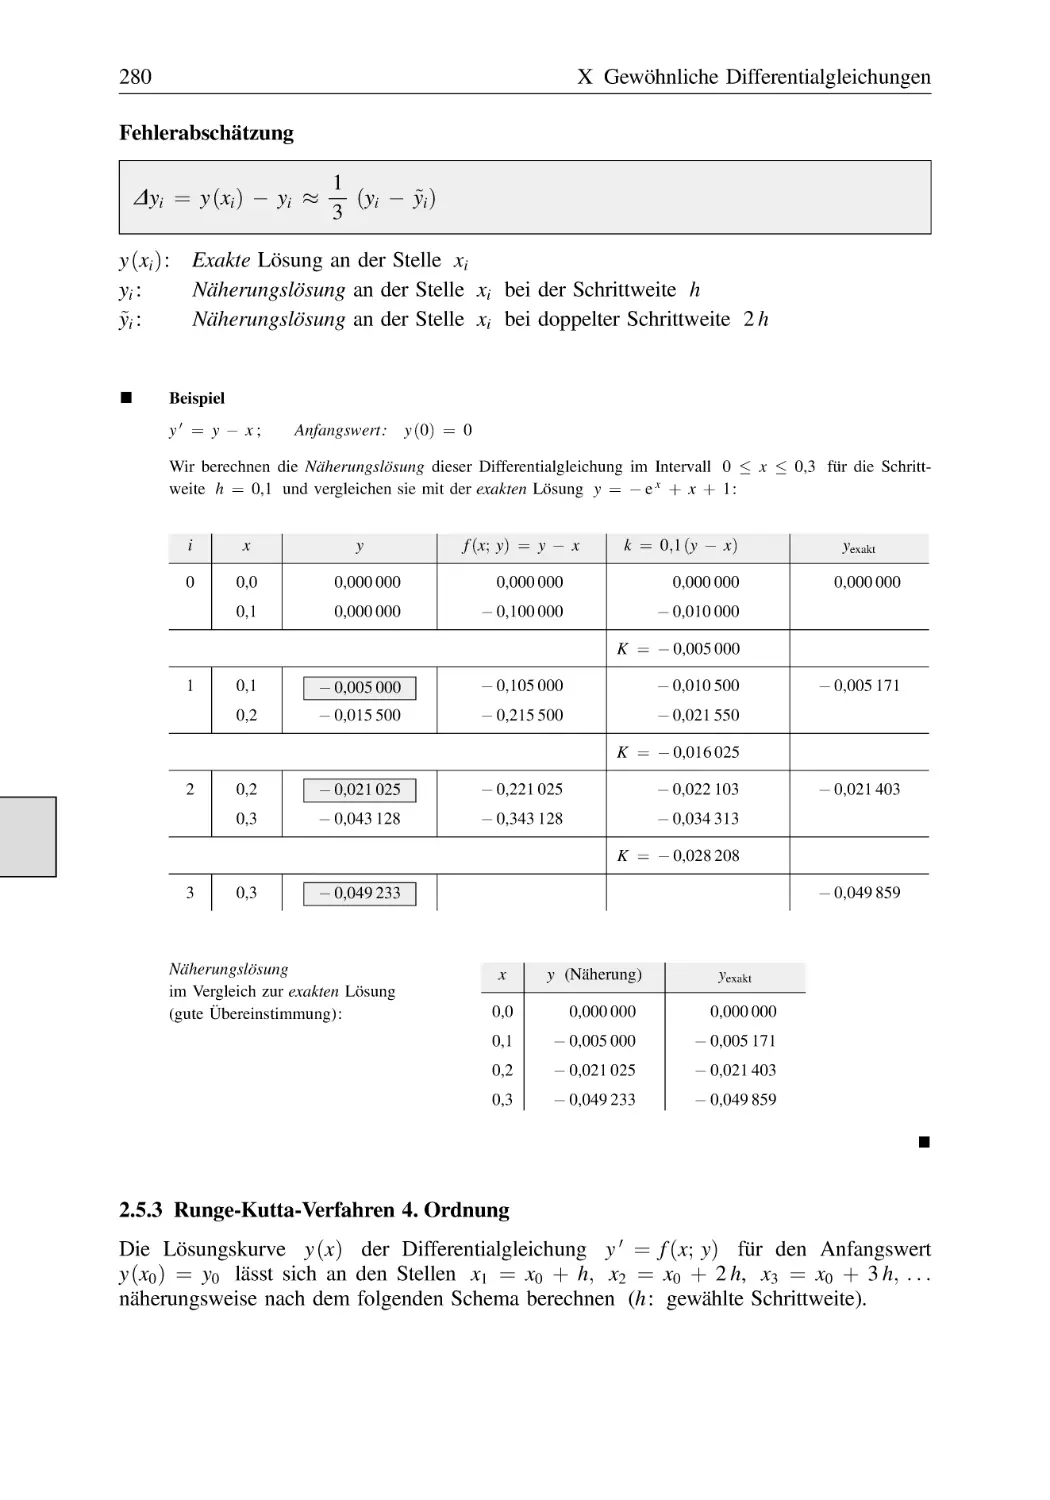 2.5.3 Runge-Kutta-Verfahren 4. Ordnung